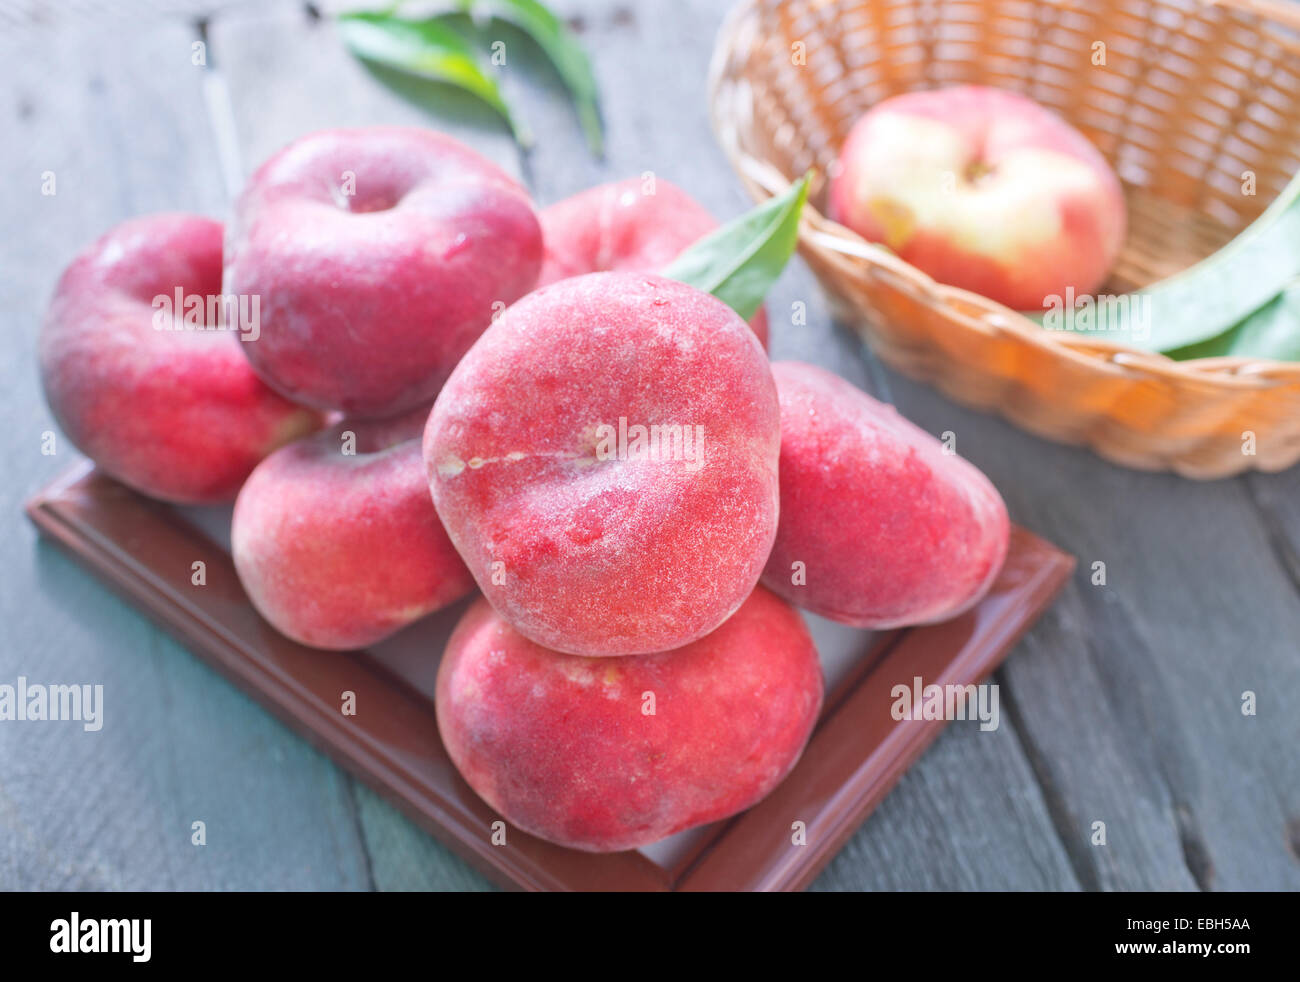 peaches Stock Photo